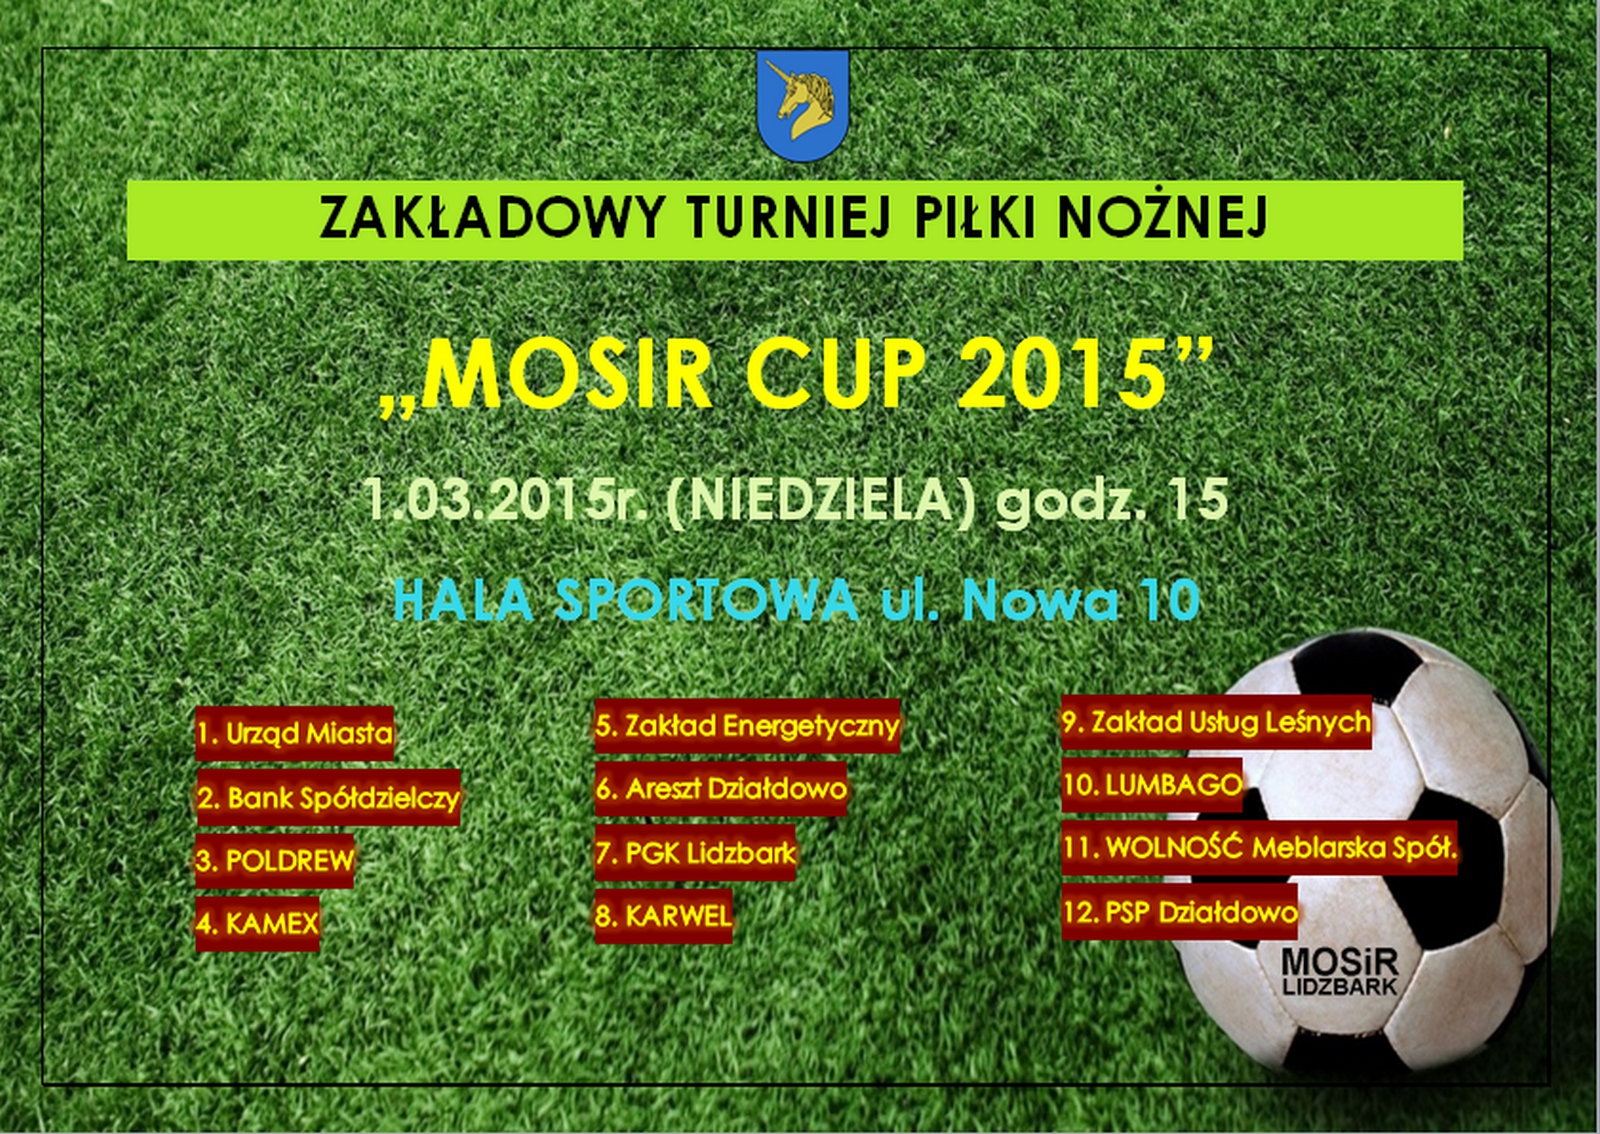 Międzyzakładowy Turniej Piłki Nożnej MOSiR CUP 2015